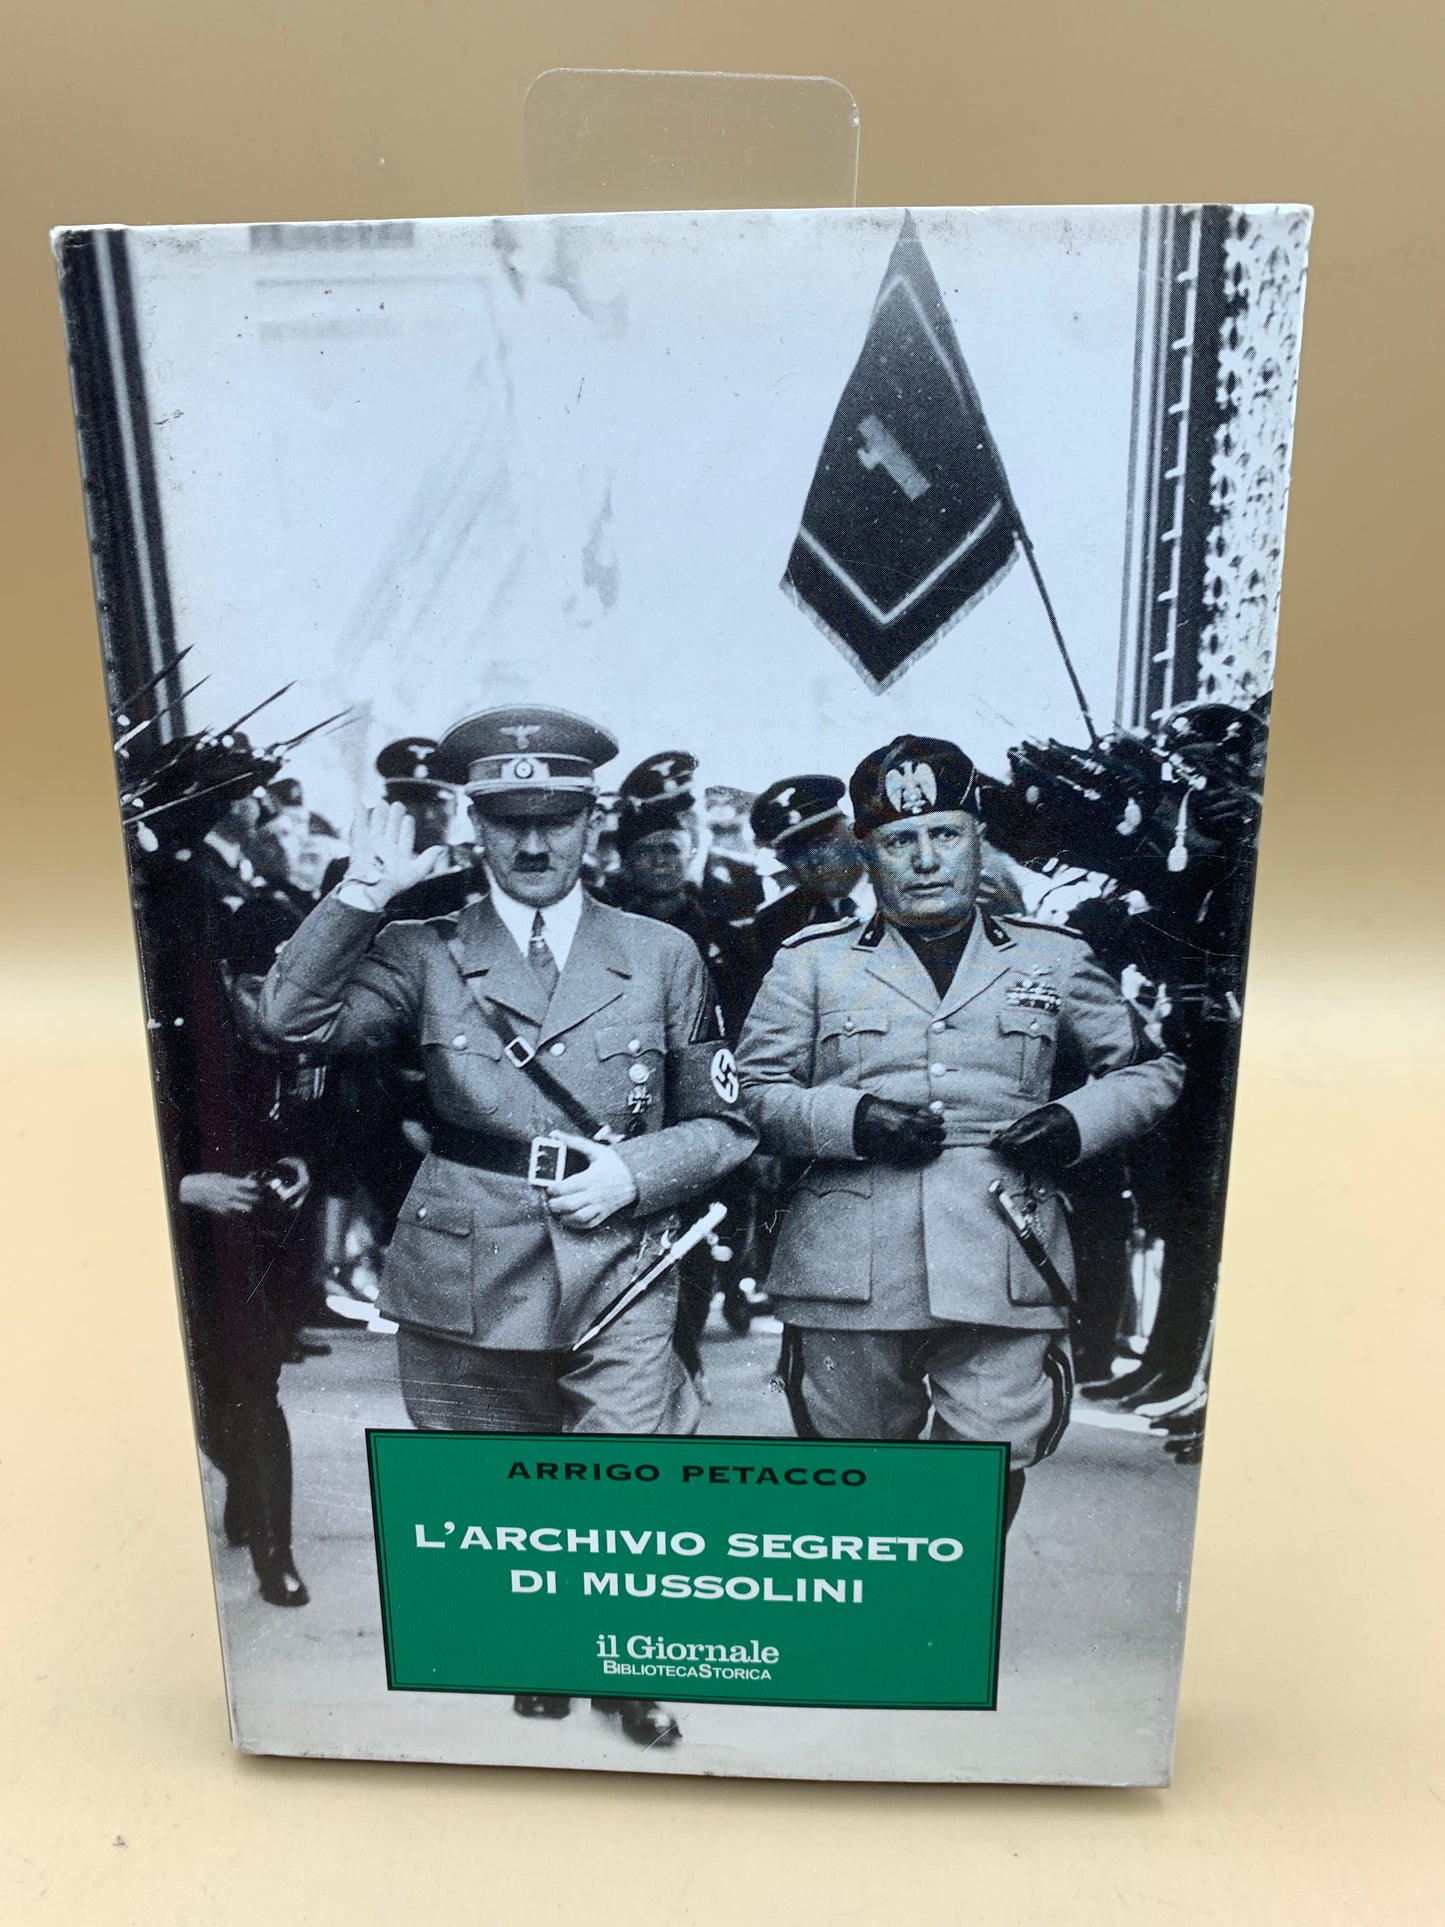 Mussolini's secret archive - Arrigo Petacco